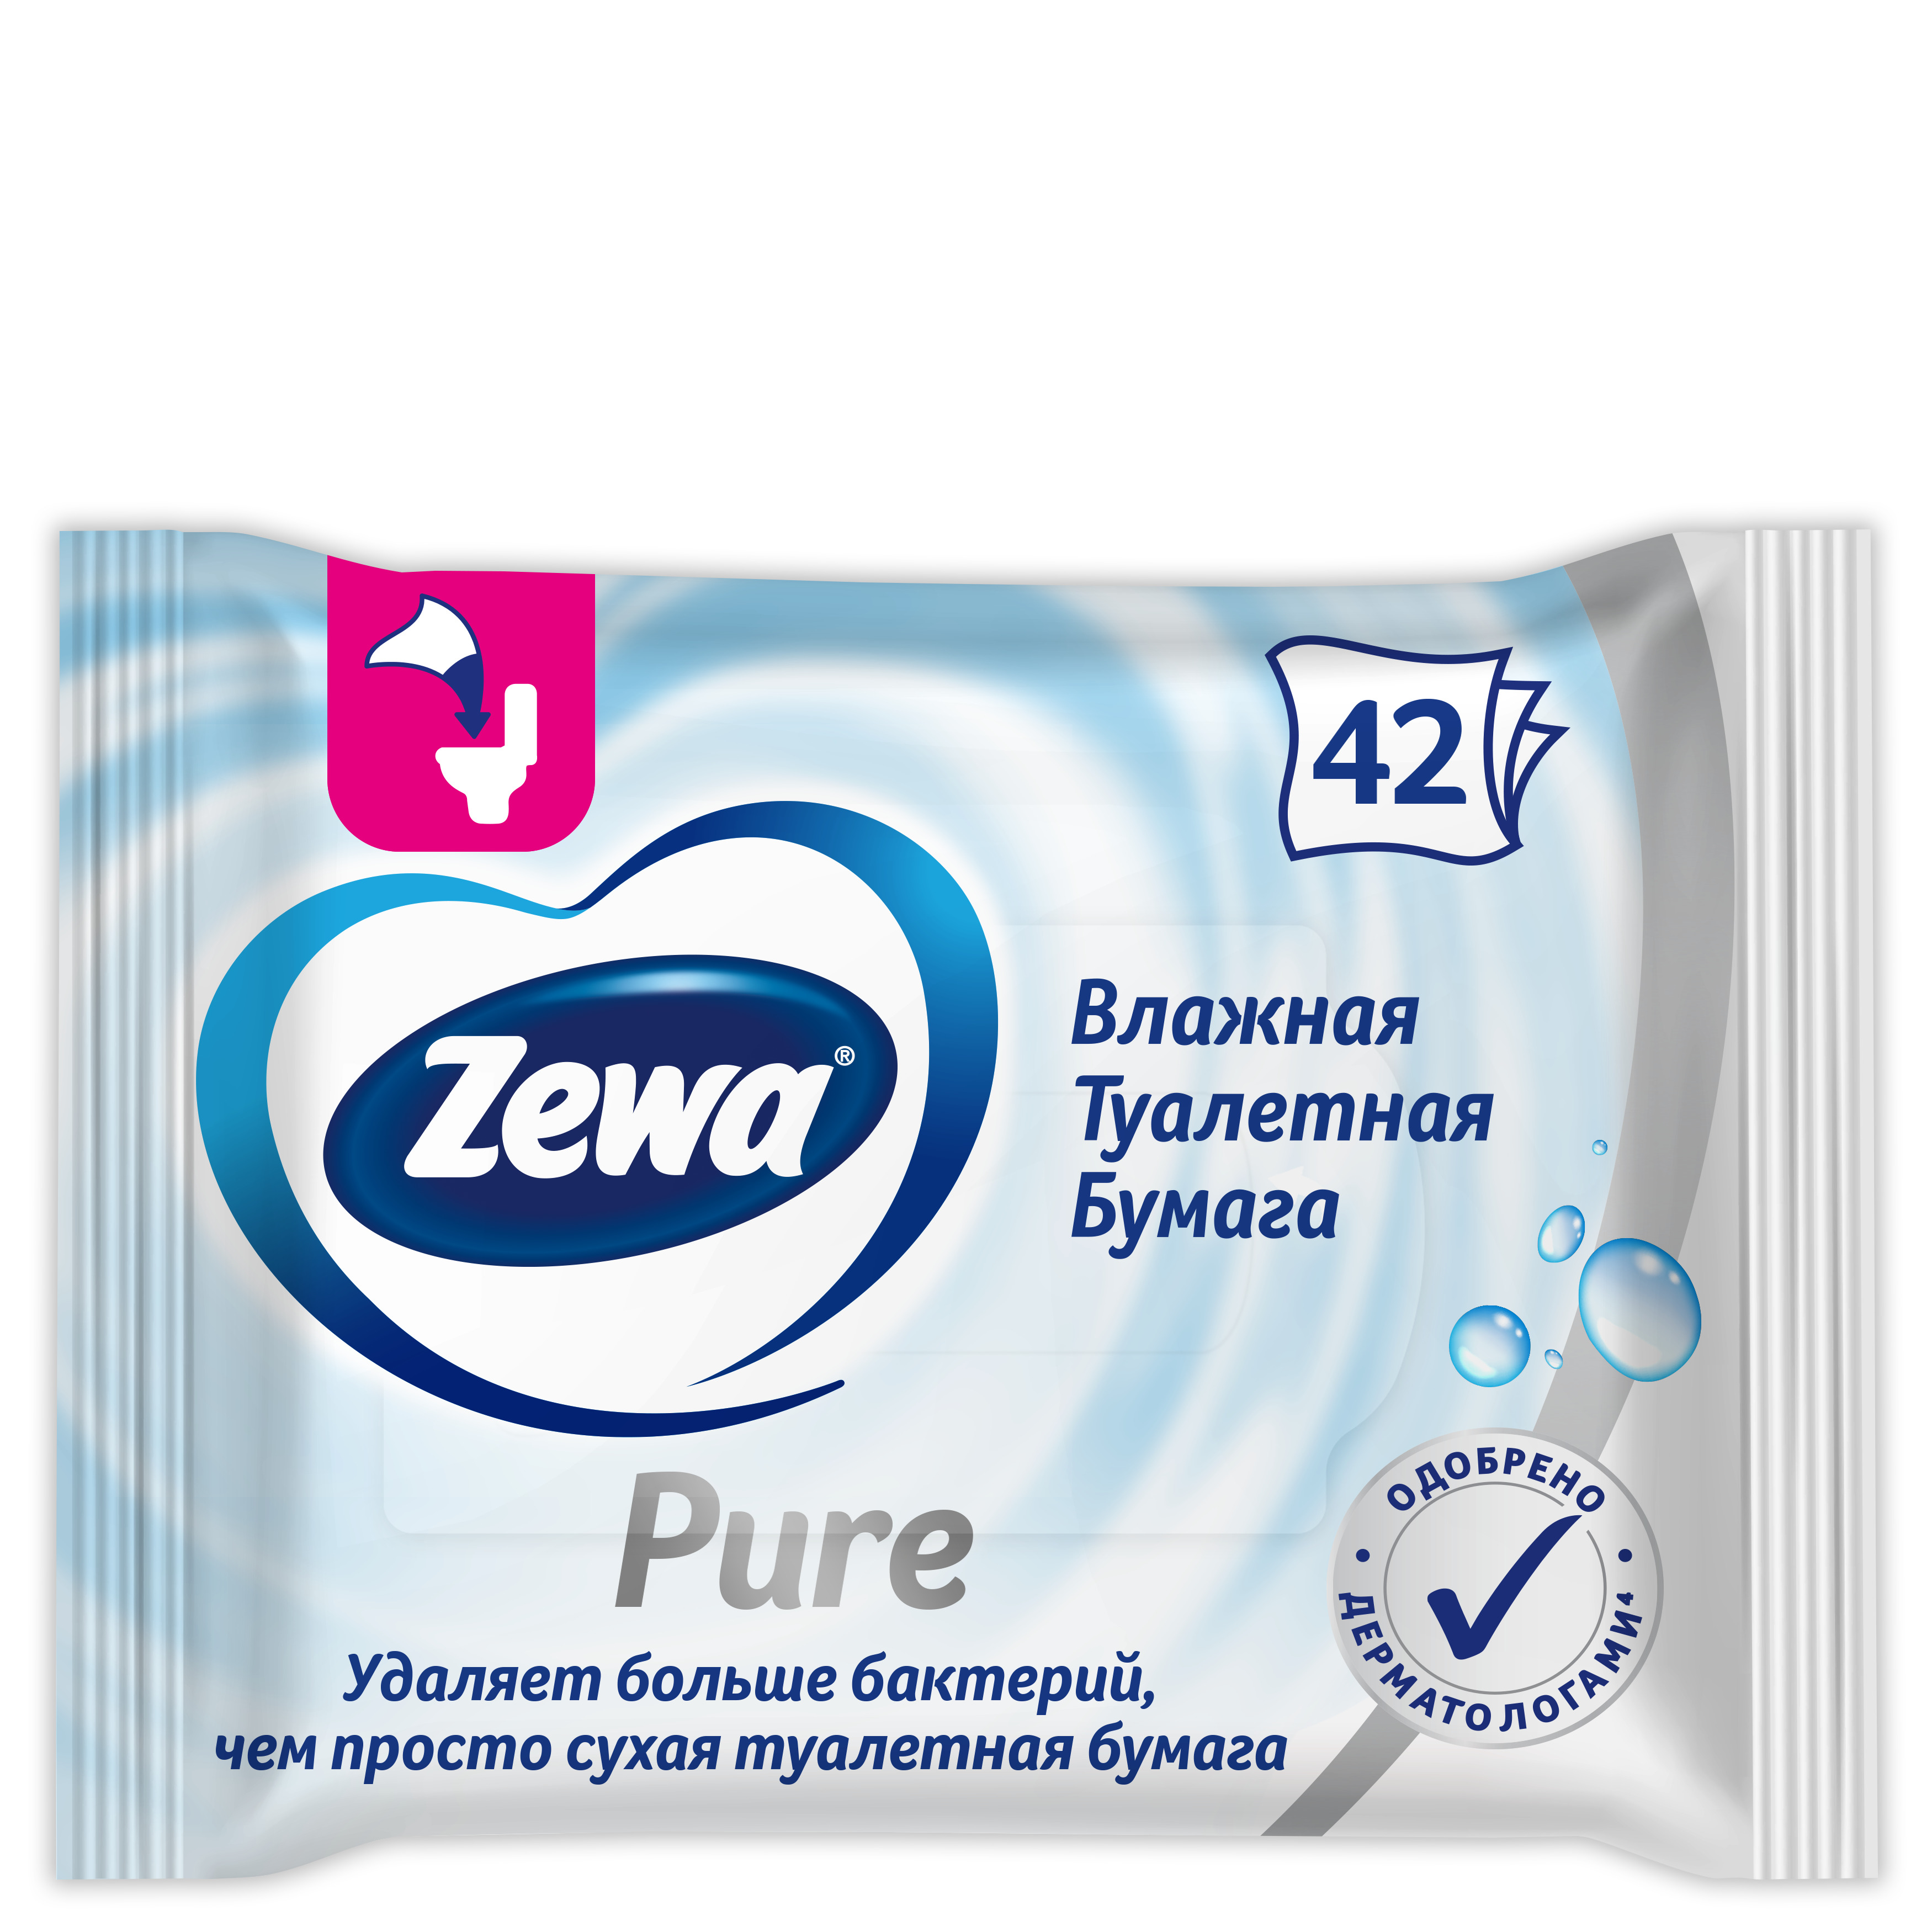 Купить Туалетная бумага Zewa без аромата, влажная, 42 шт., туалетная бумага Moist paper 'Pure'